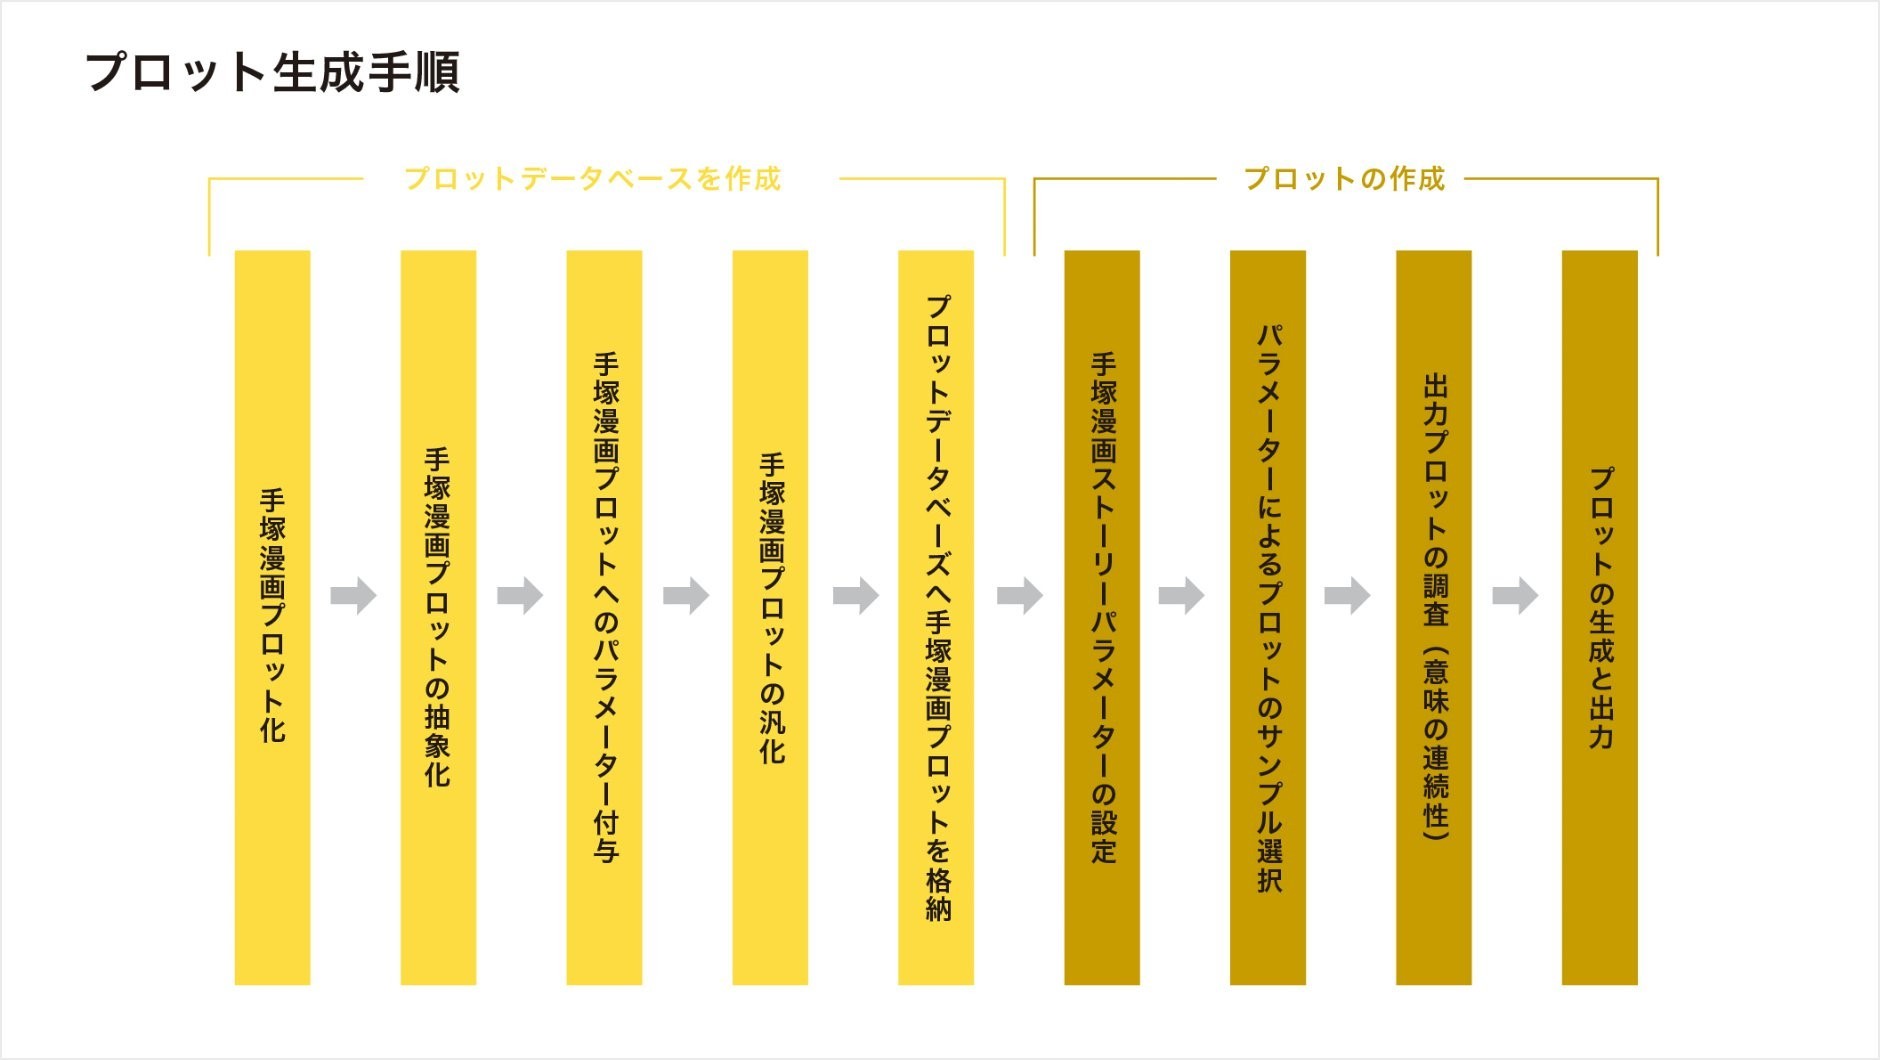 キオクシア Tezuka プロジェクトチームが年度 人工知能学会 現場イノベーション賞 銀賞を受賞 Business Wire